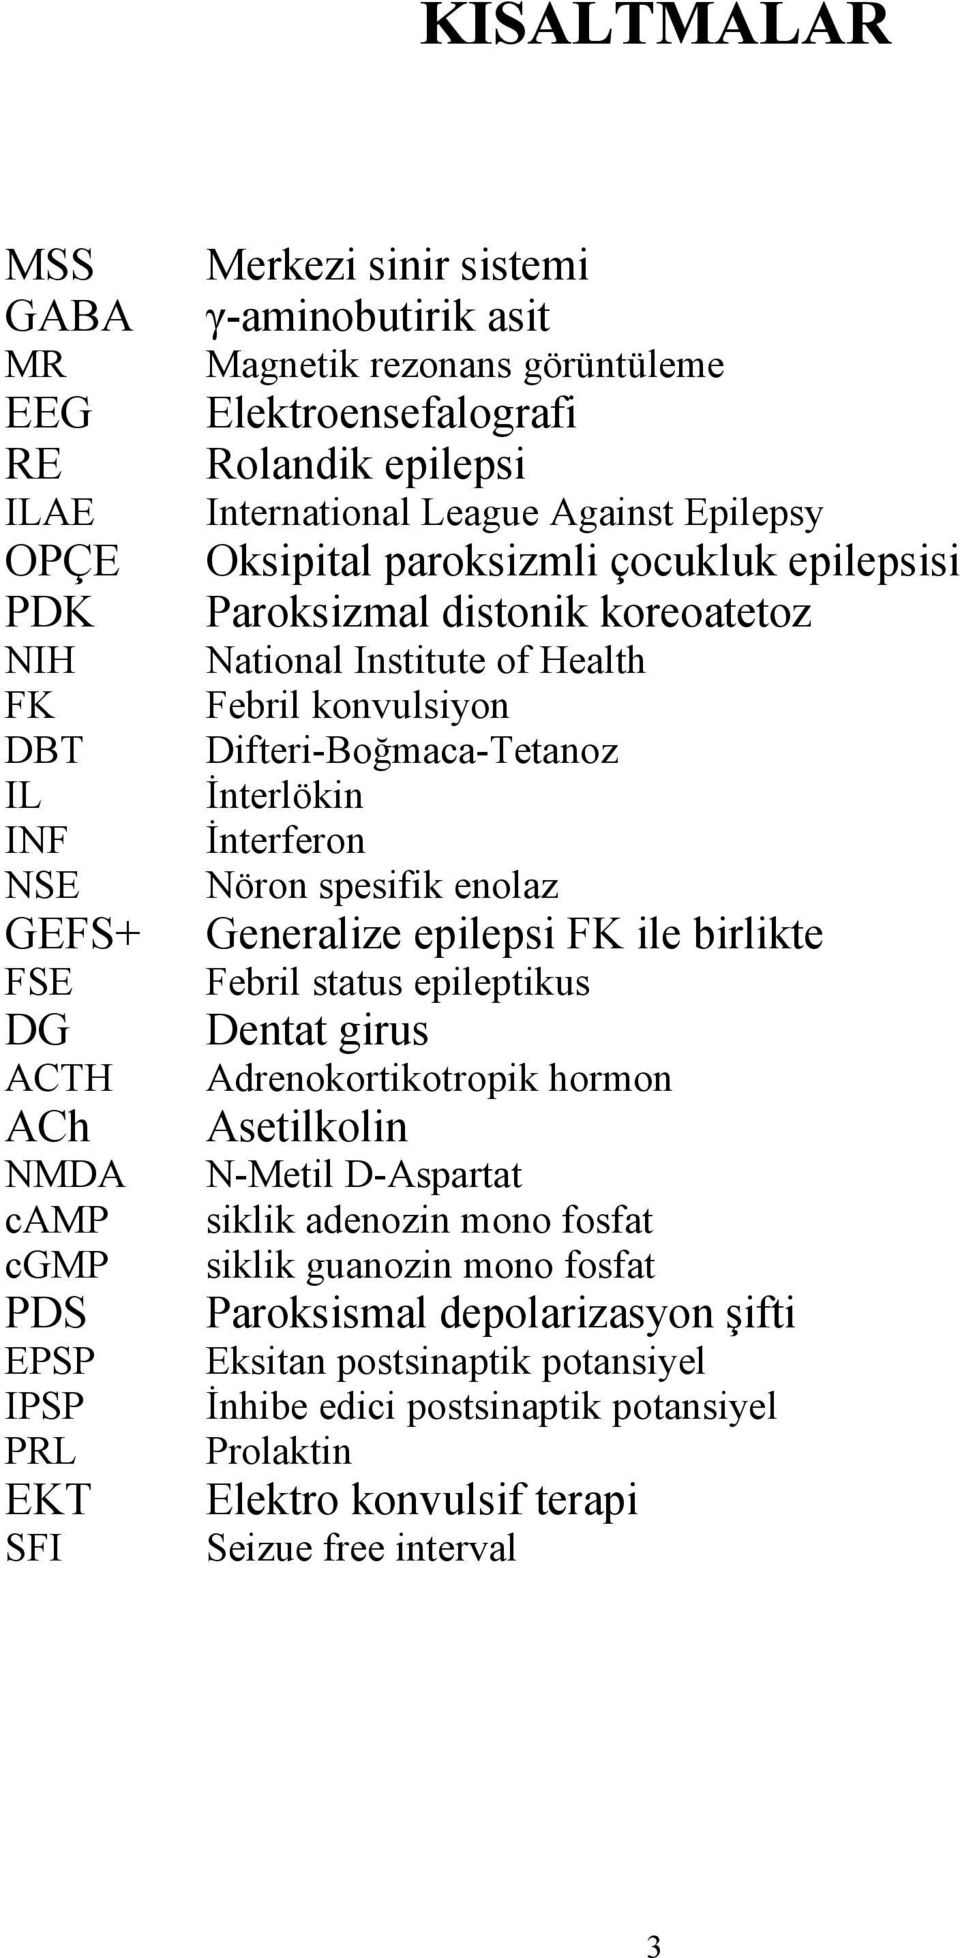 konvulsiyon Difteri-Boğmaca-Tetanoz İnterlökin İnterferon Nöron spesifik enolaz Generalize epilepsi FK ile birlikte Febril status epileptikus Dentat girus Adrenokortikotropik hormon Asetilkolin